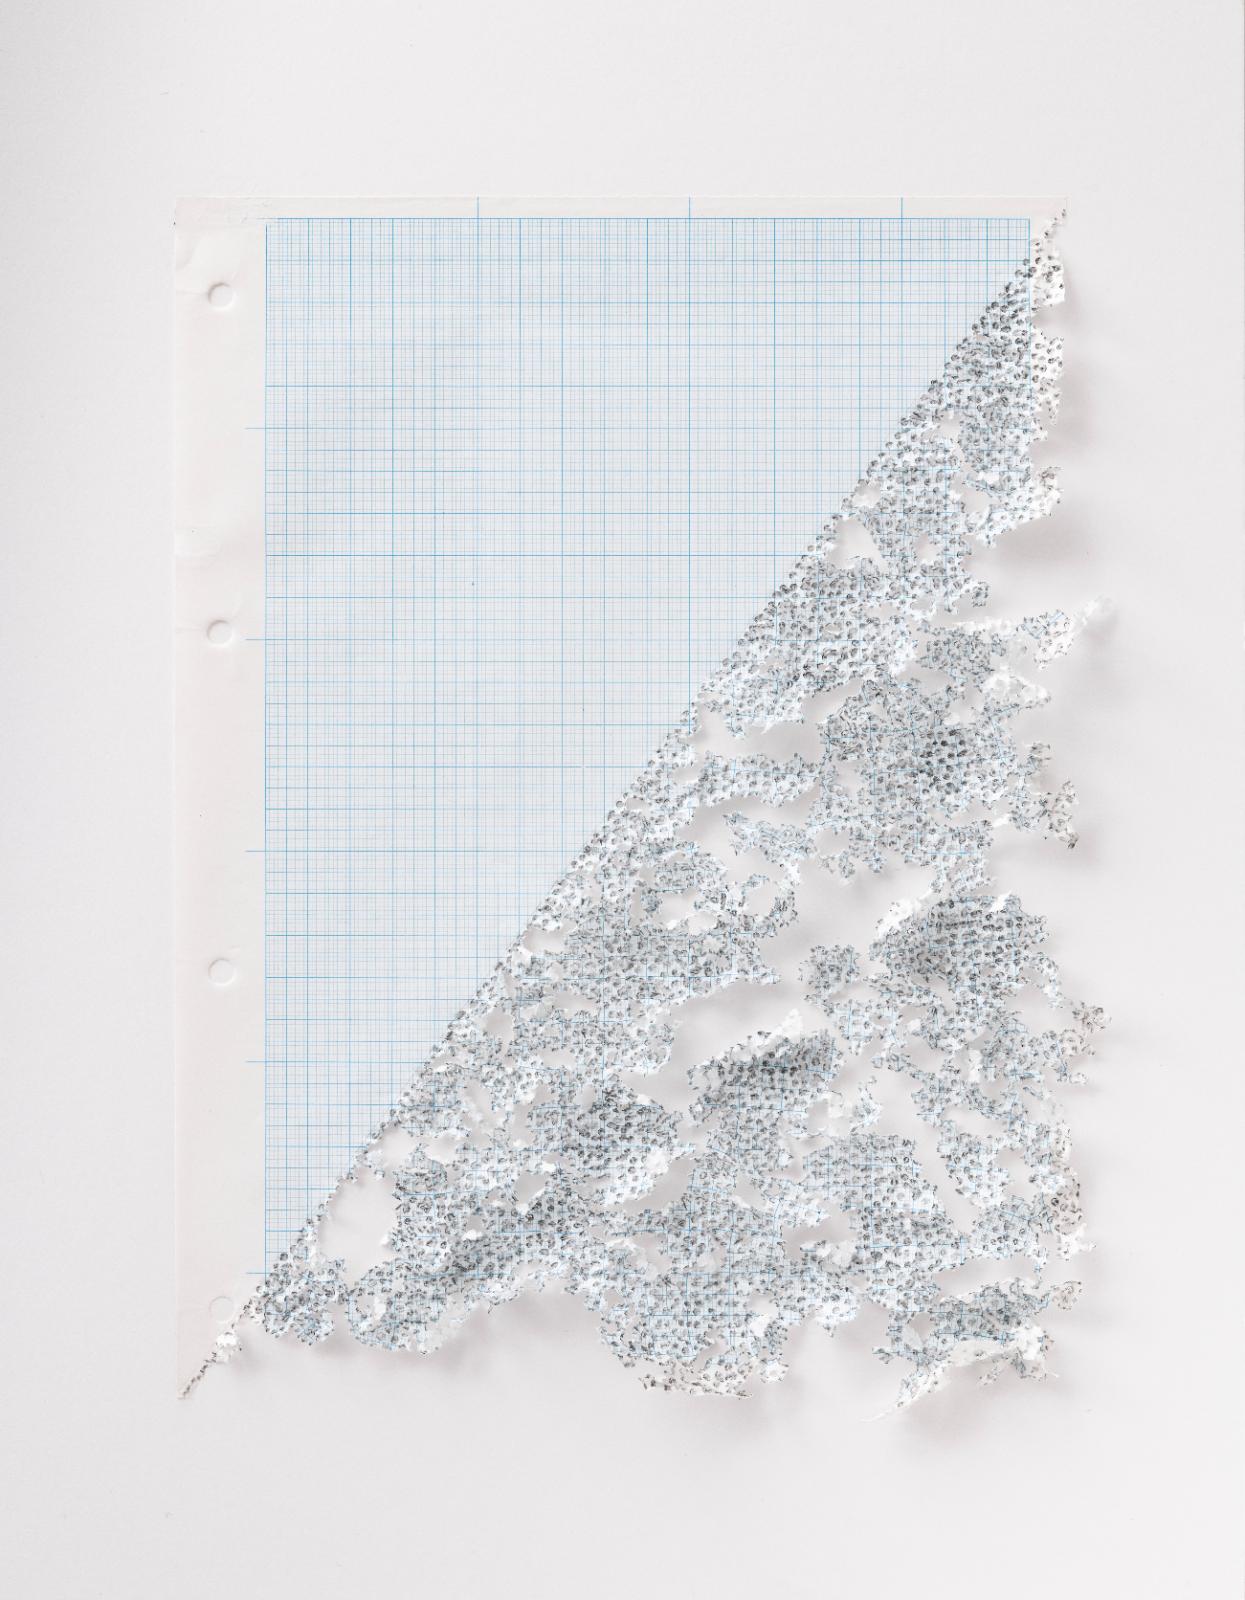 Martin Bruno Schmid, Bleistiftspitze in Papier #12, 2020, Bleistift in Papier, 41 × 31 cm, Preis auf Anfrage